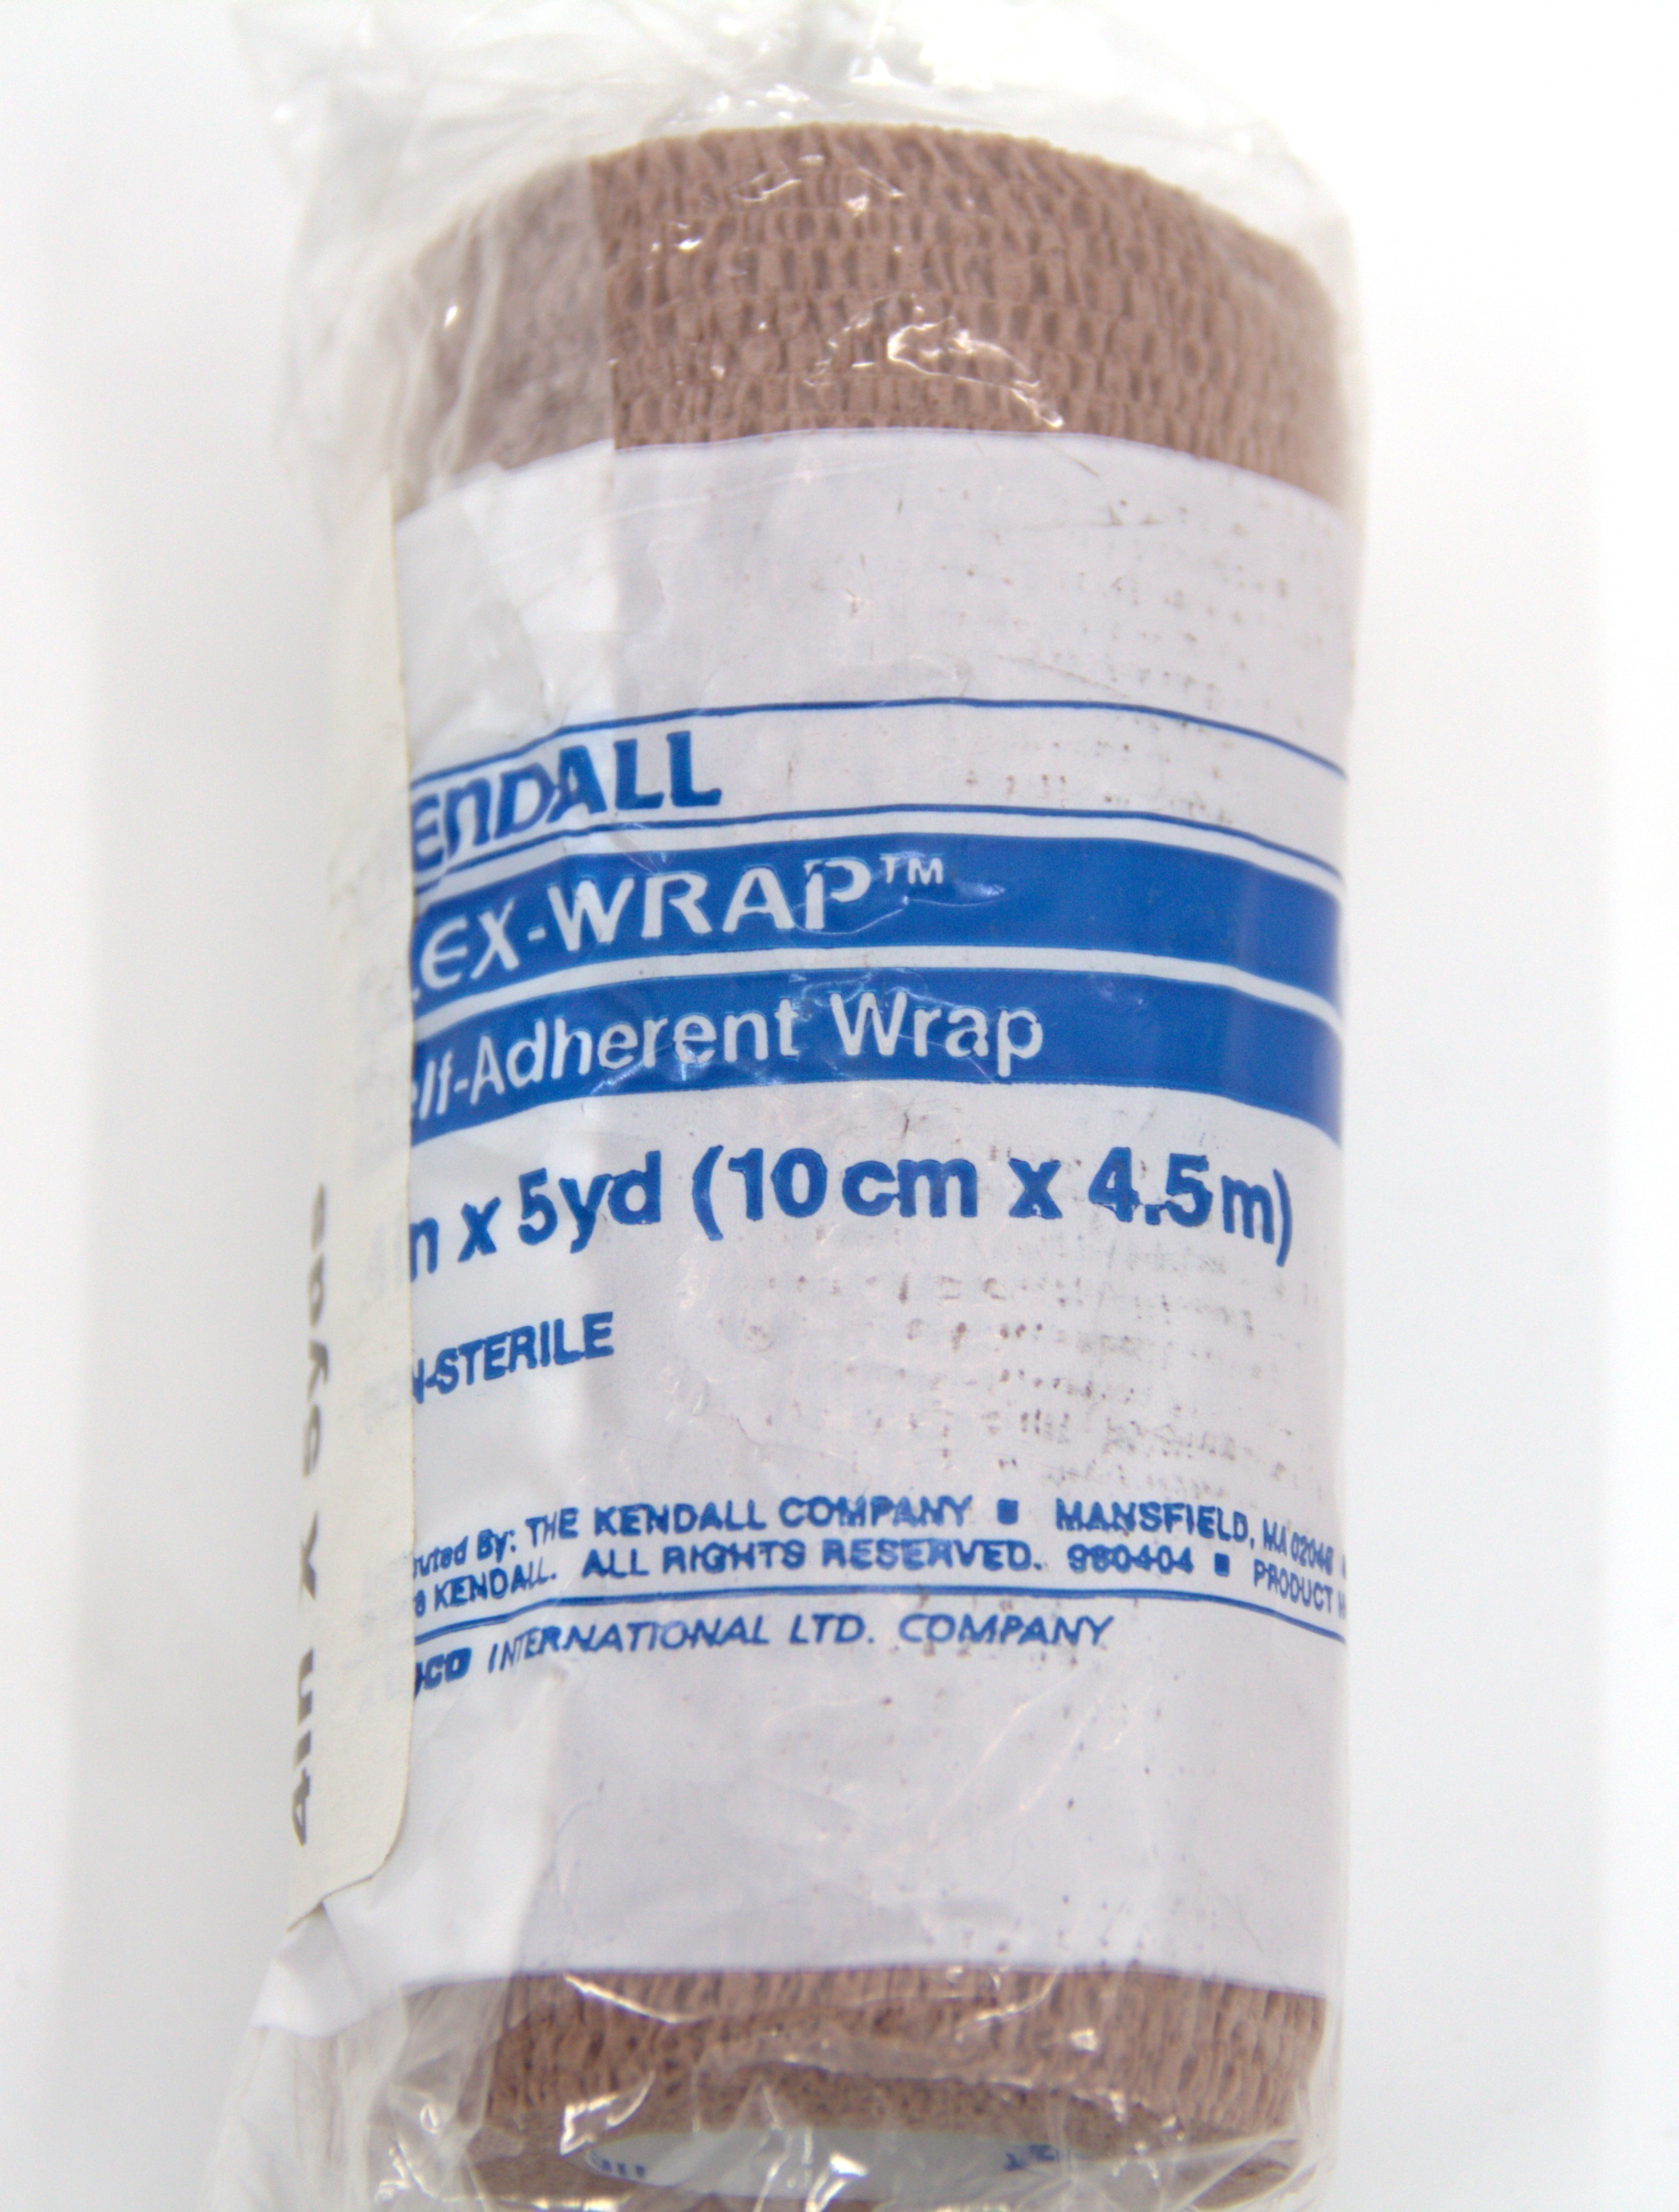 Bandage Coban Self Adherent Wrap (3M) (4"x 5 yds)